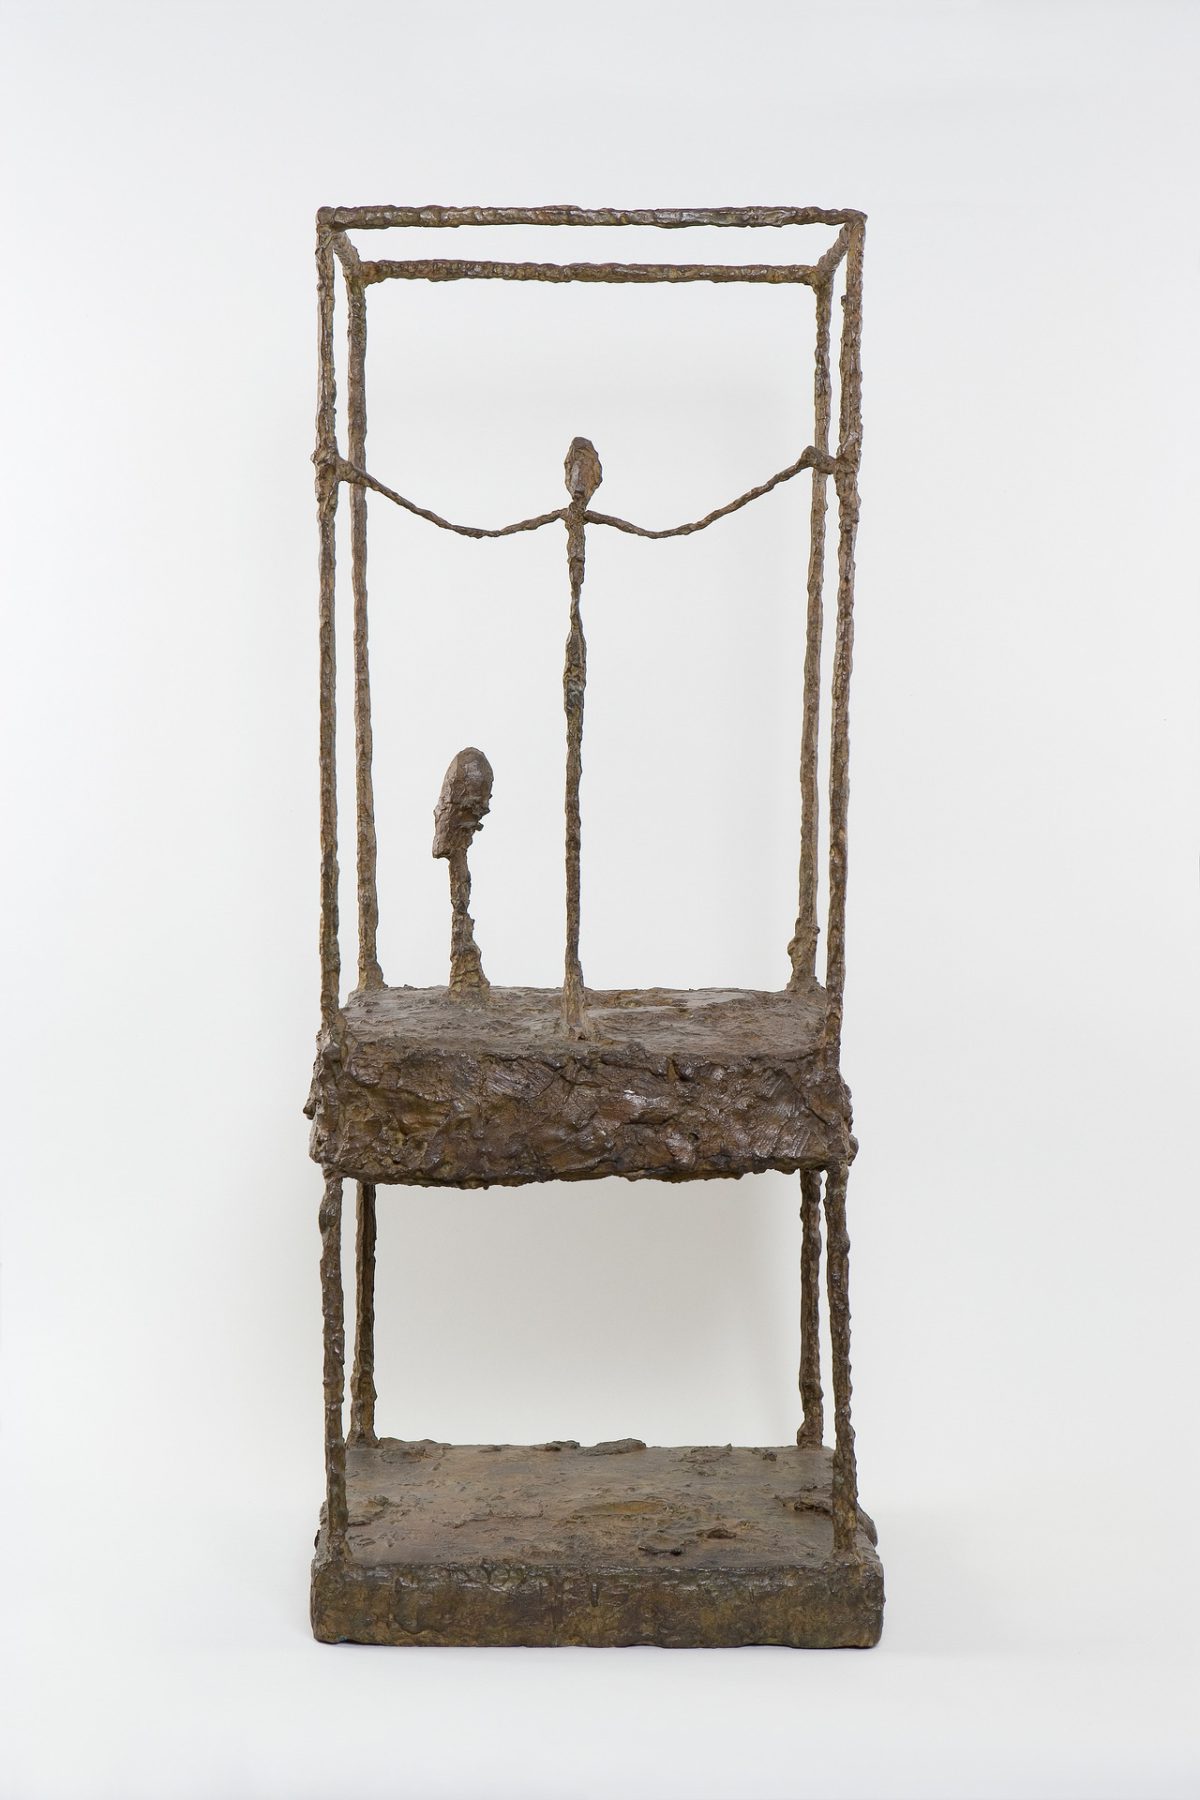 Alberto Giacometti: The Cage